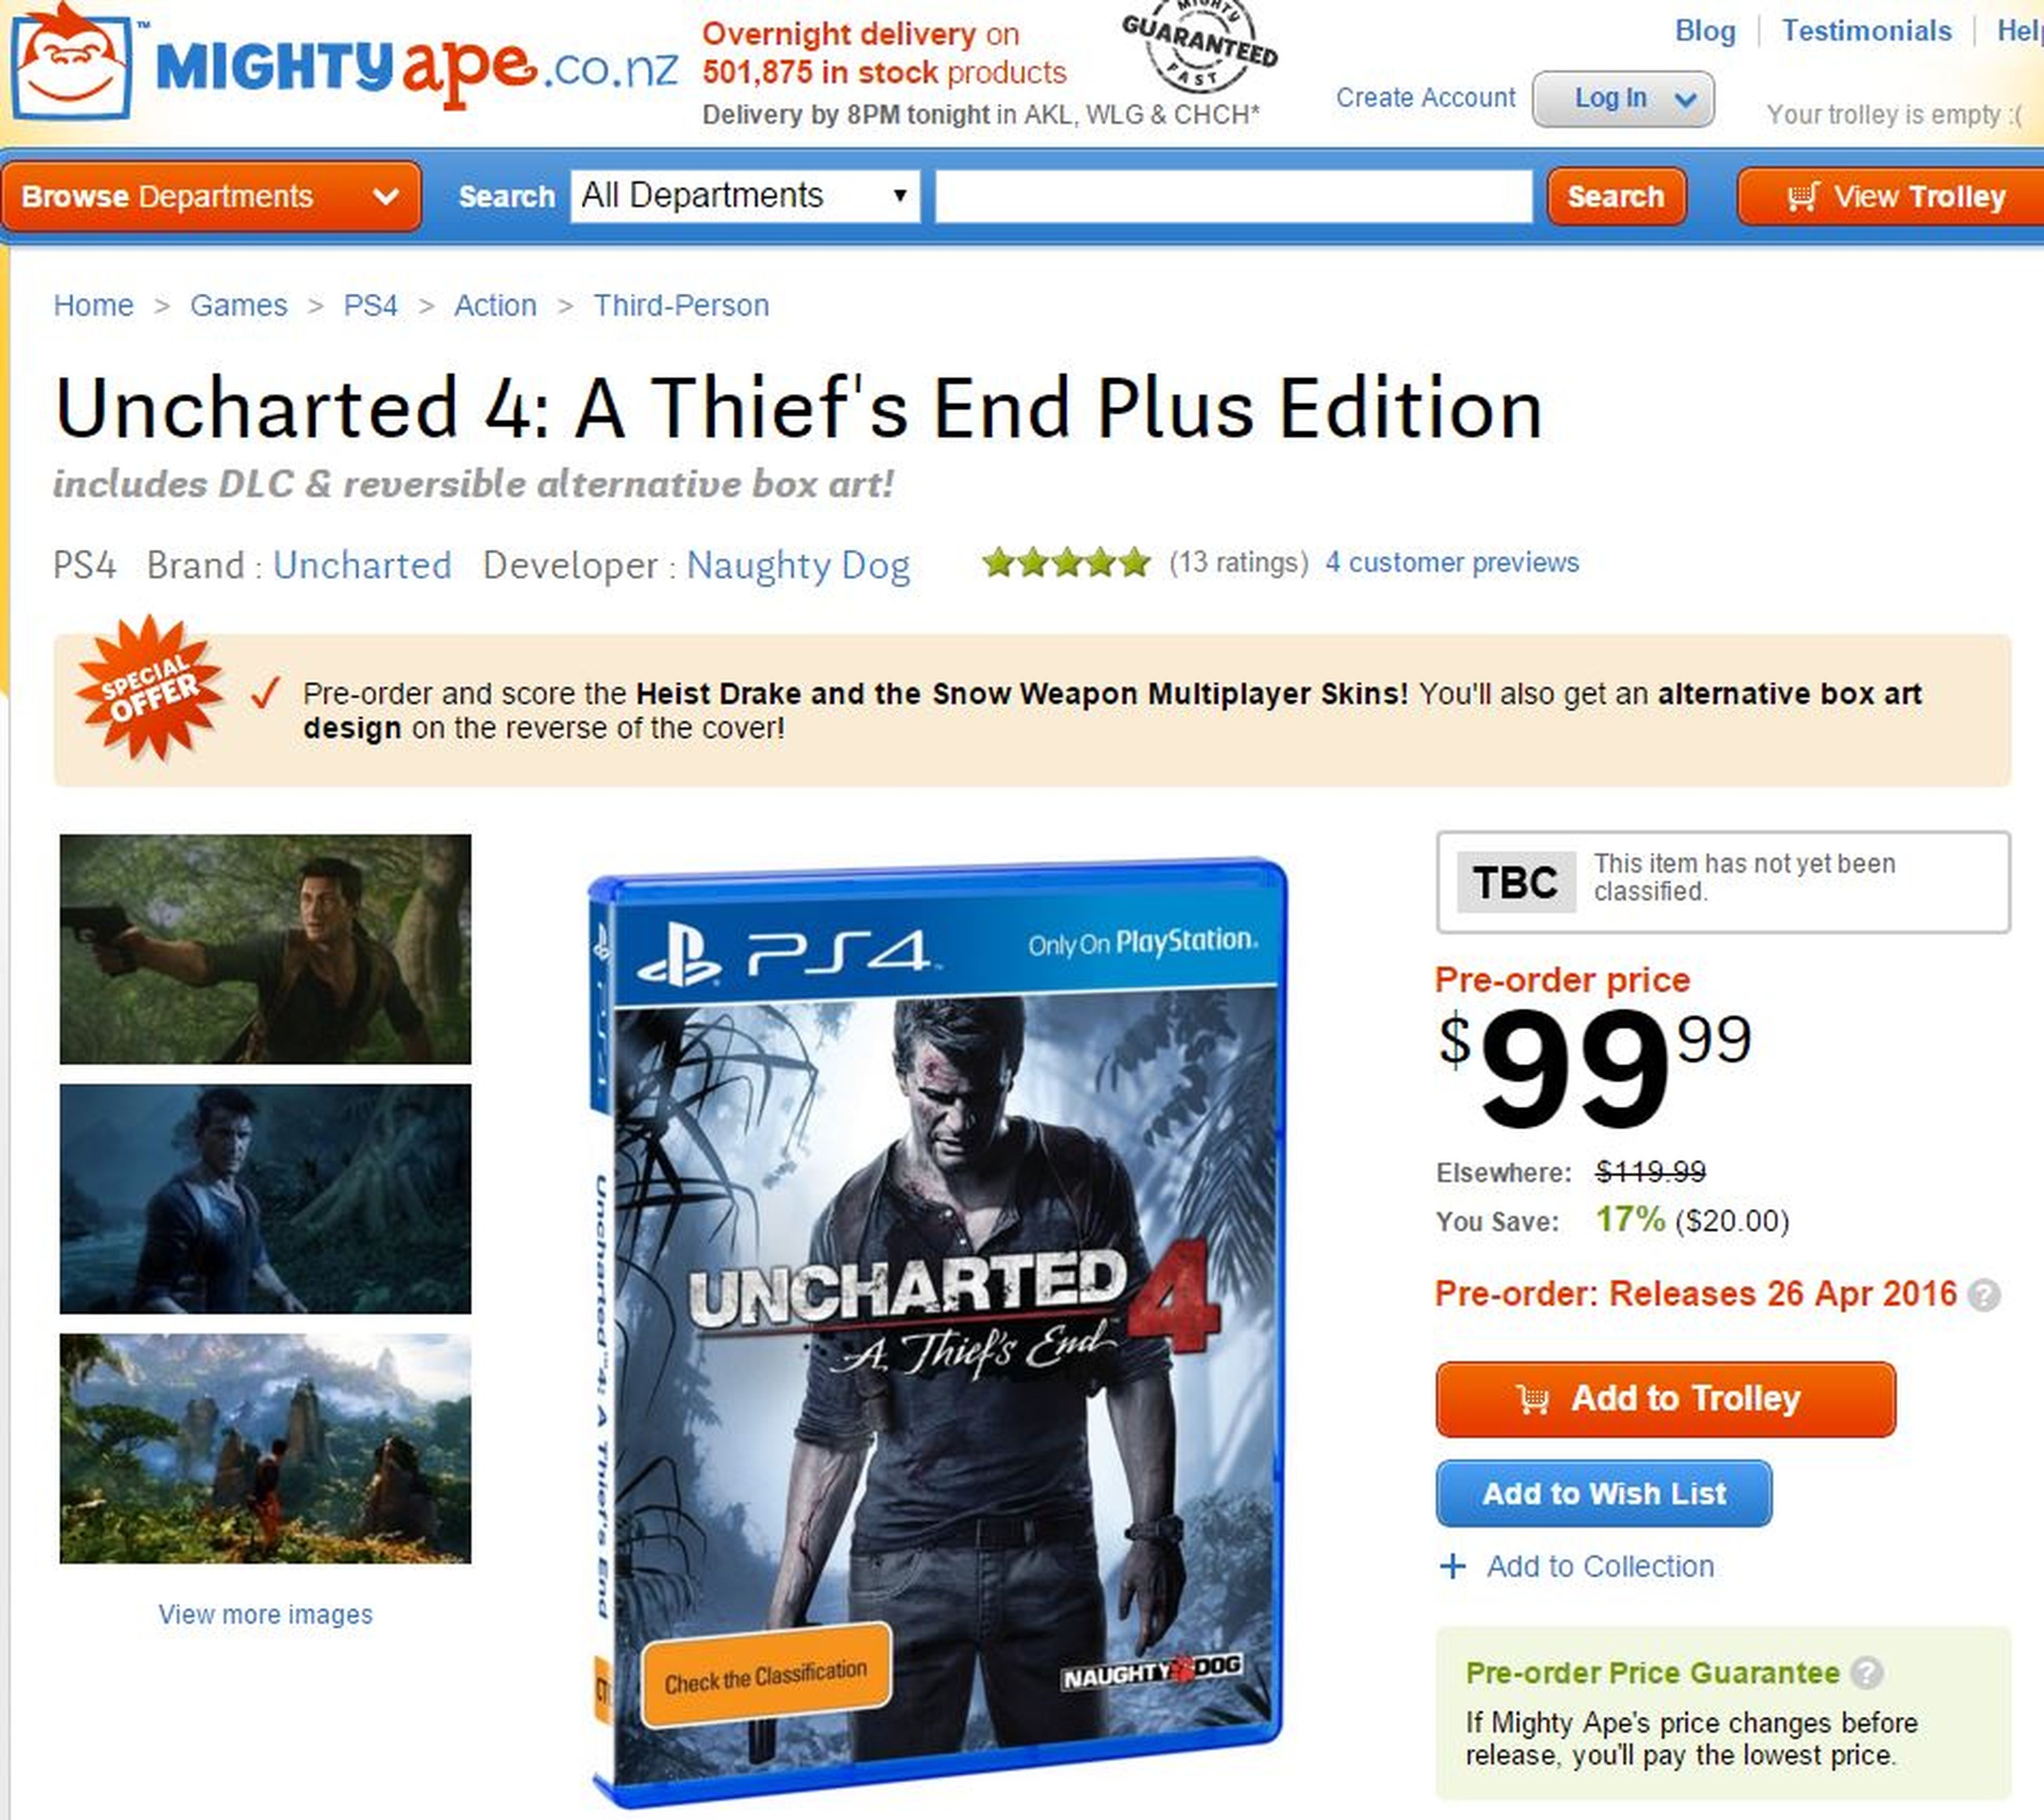 Uncharted 4 El Desenlace del Ladrón, Edición Plus exclusiva de GAME